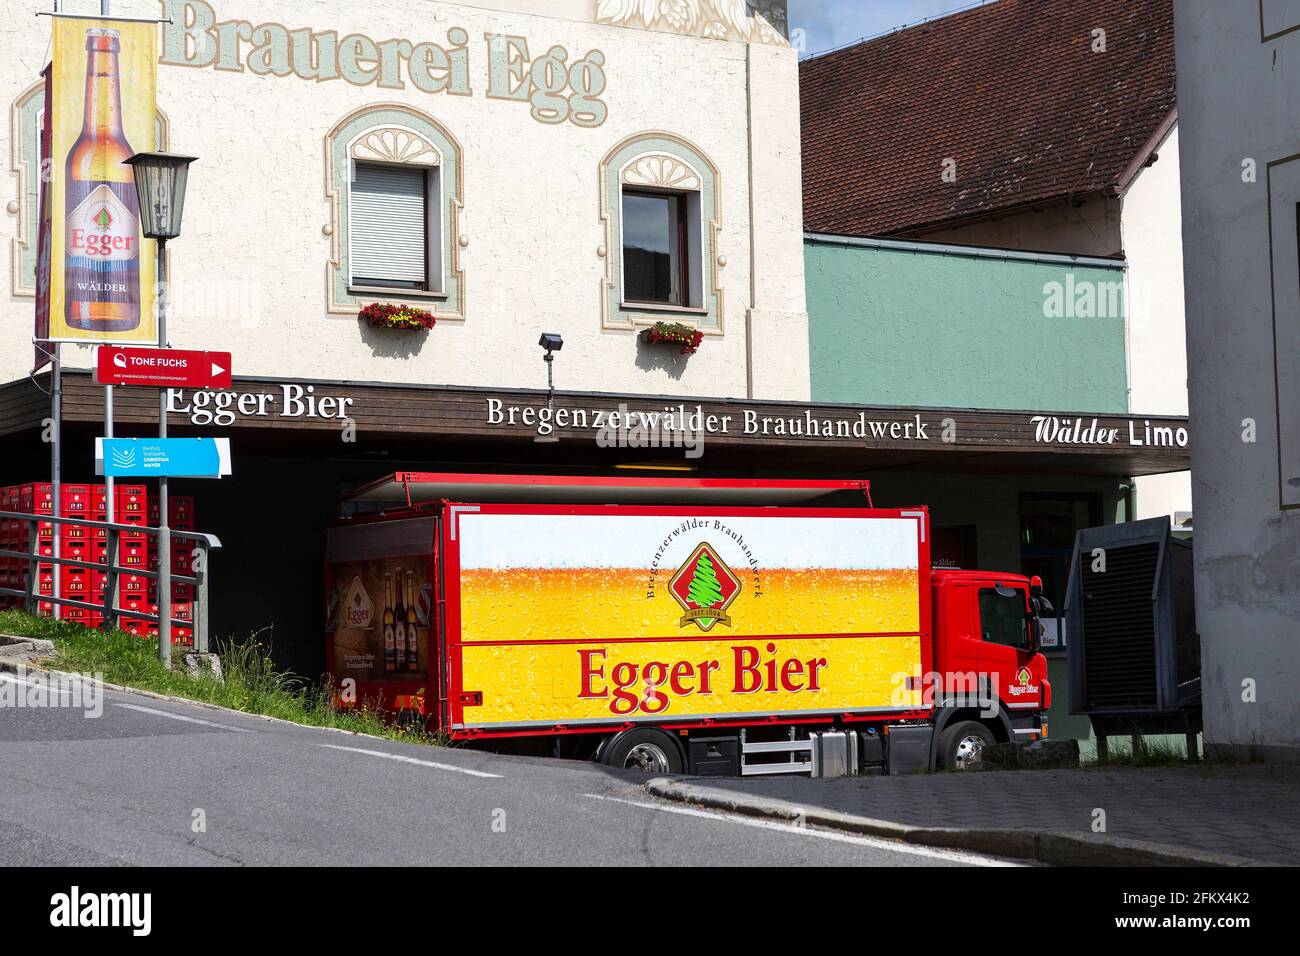 Brewery Egg, Bregenzerwald Brewery In Vorarlberg, Austria Stock Photo